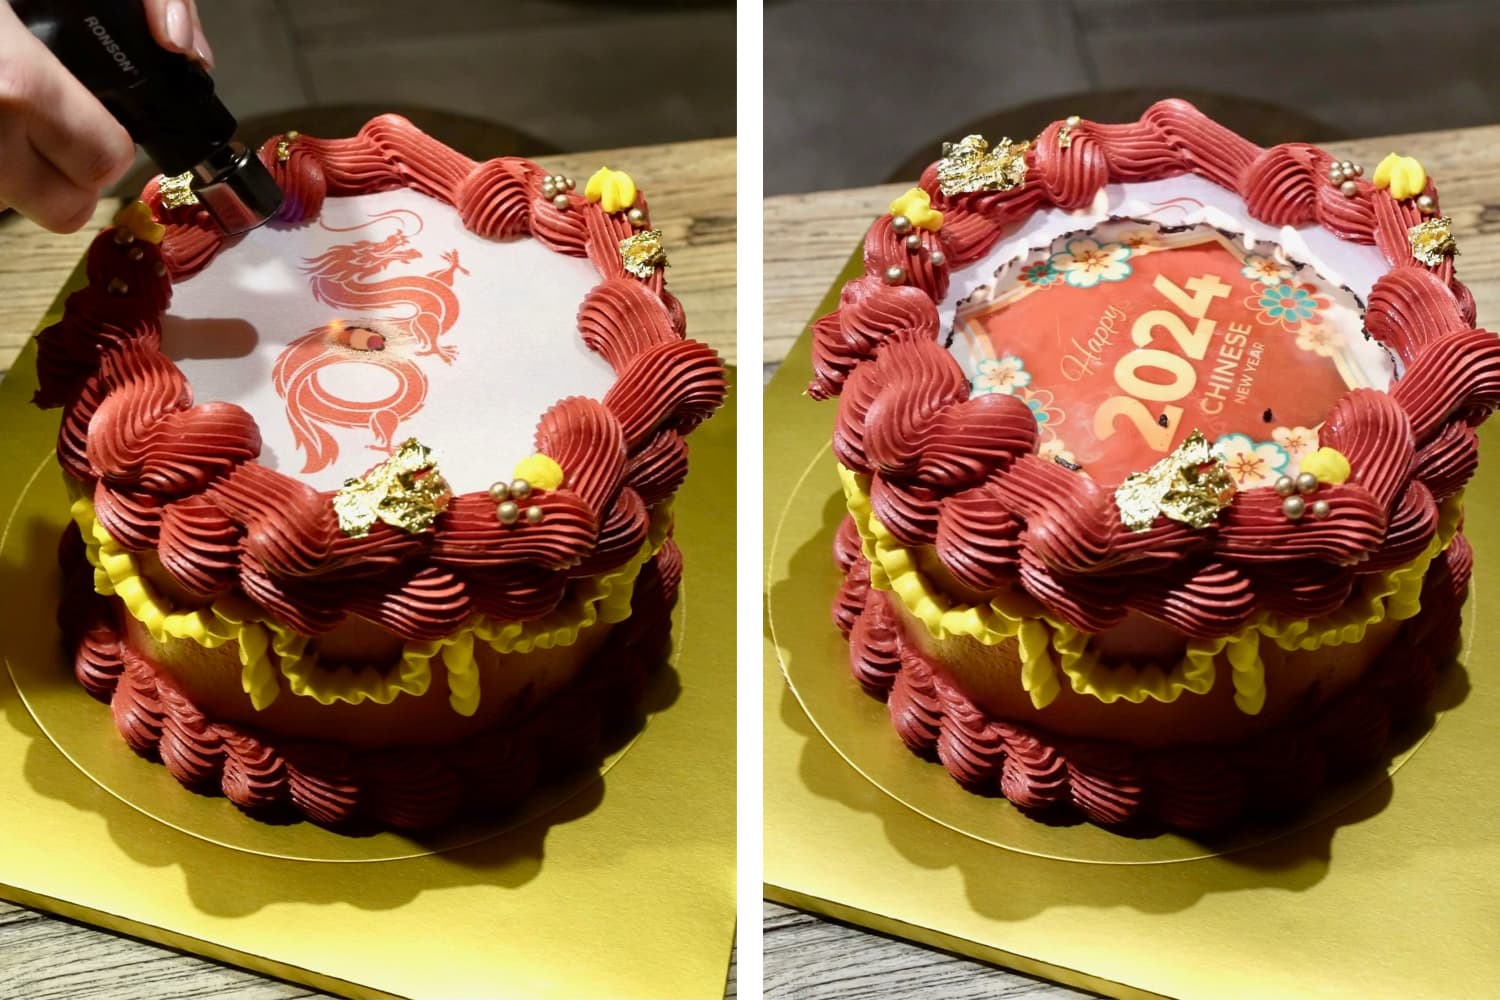 TikTok’s Burn-Away Cake Trend, Explained